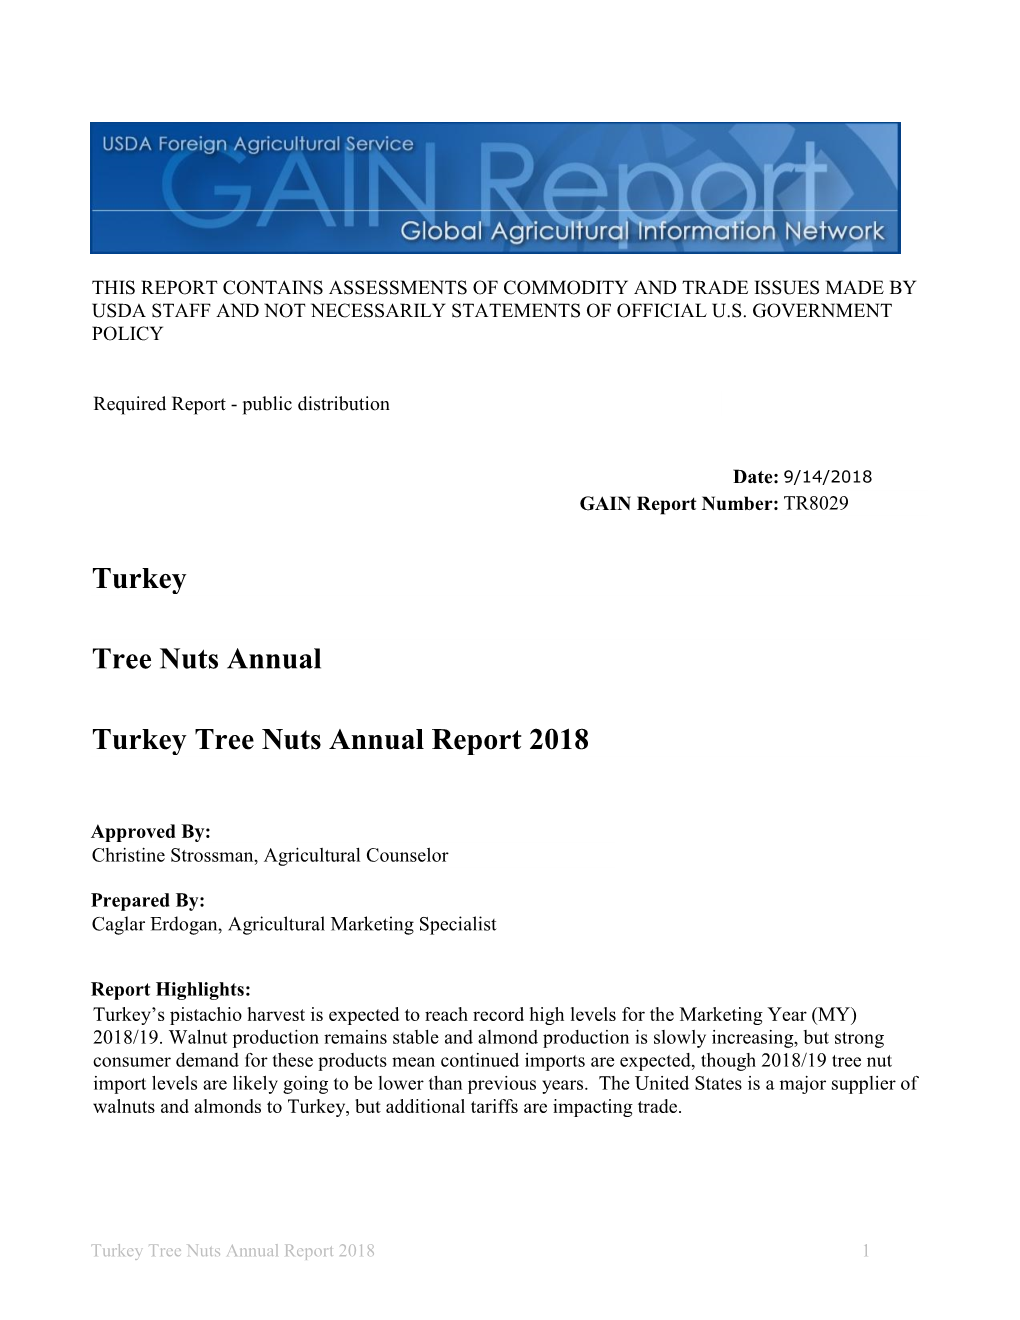 Turkey Tree Nuts Annual Report 2018